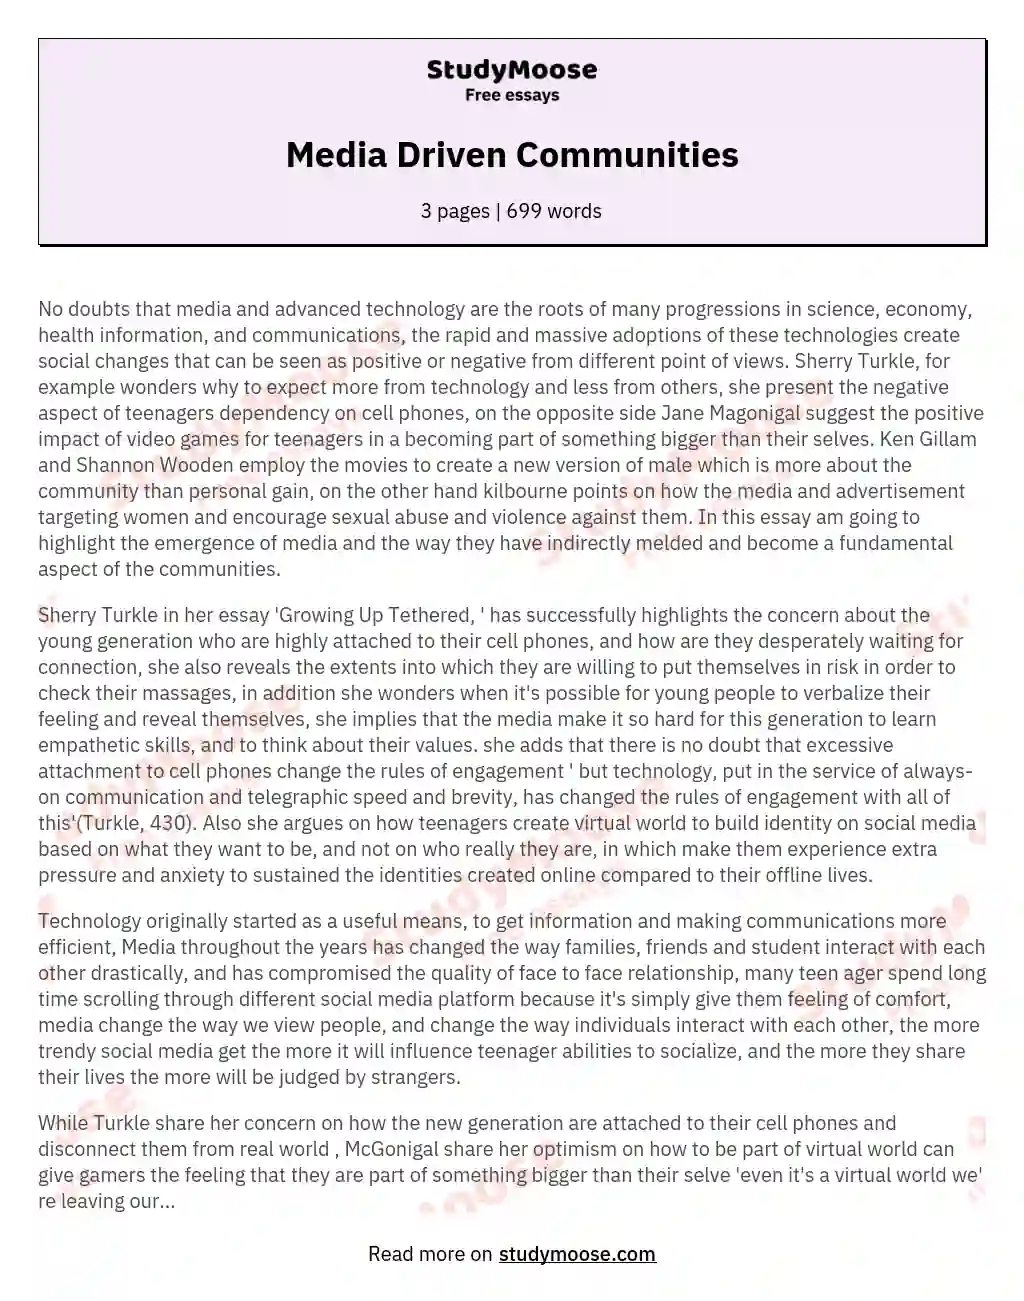 Media Driven Communities essay